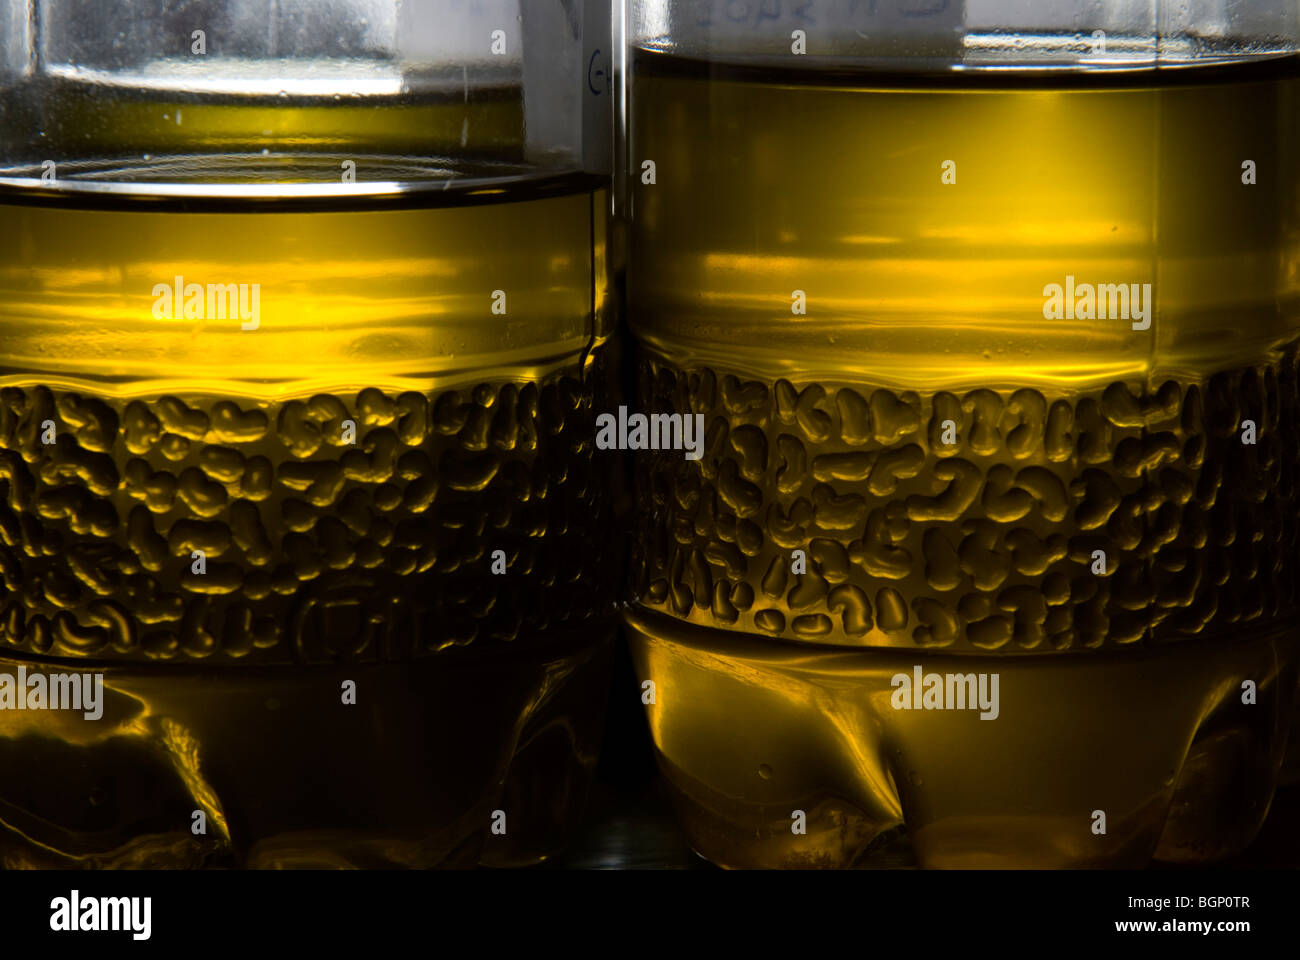 Bottiglie di greggio Olio di oliva per la verifica presso gli impianti di laboratorio Foto Stock